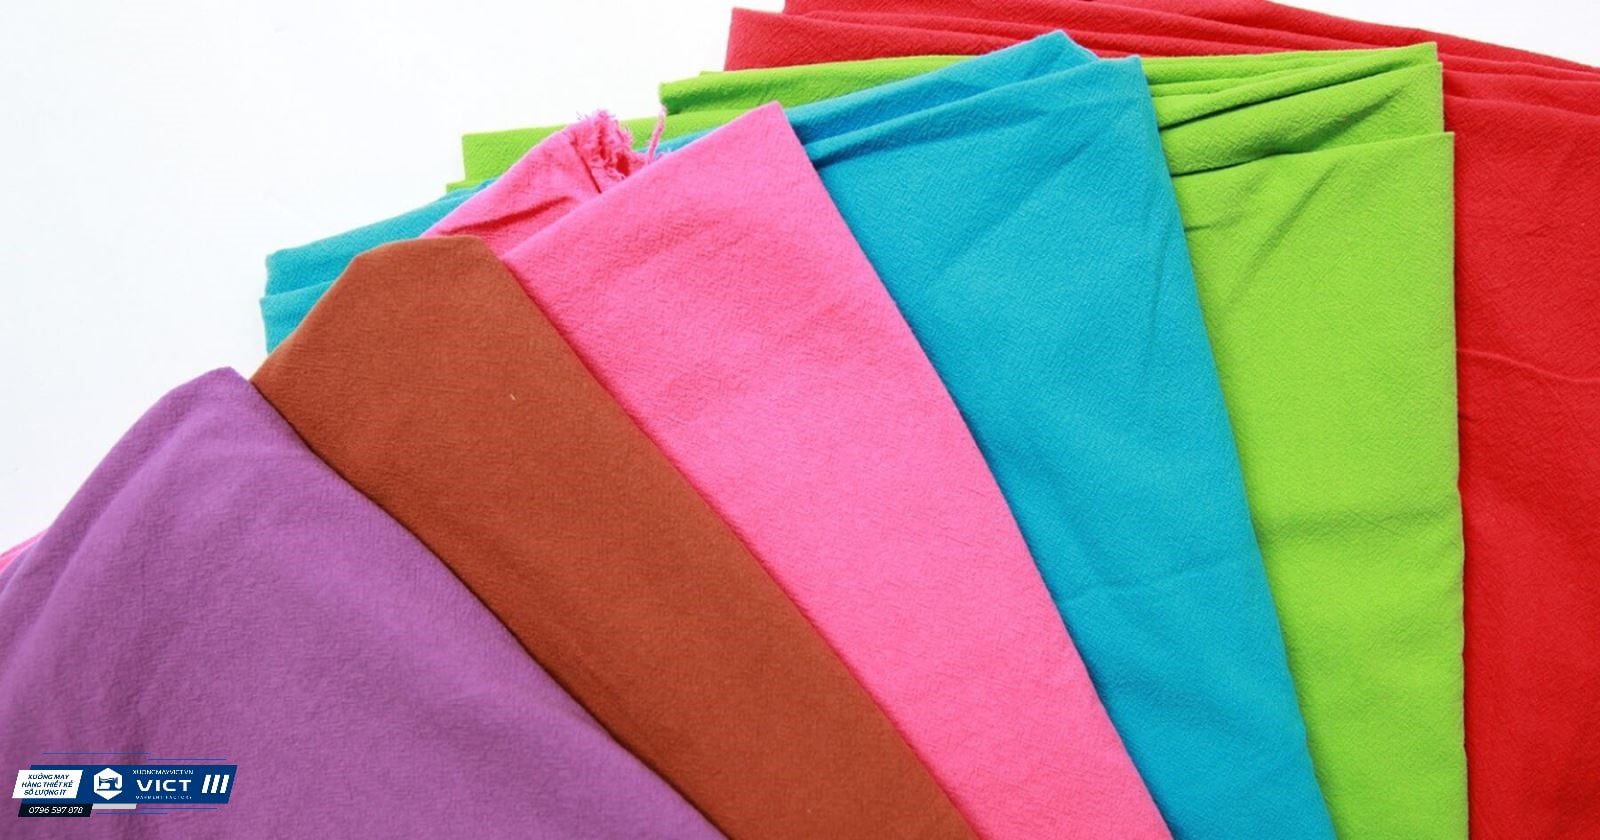 Vải cotton là một trong những loại vải phổ biến nhất được mọi người sử dụng để may quần áo; và may các loại váy đầm